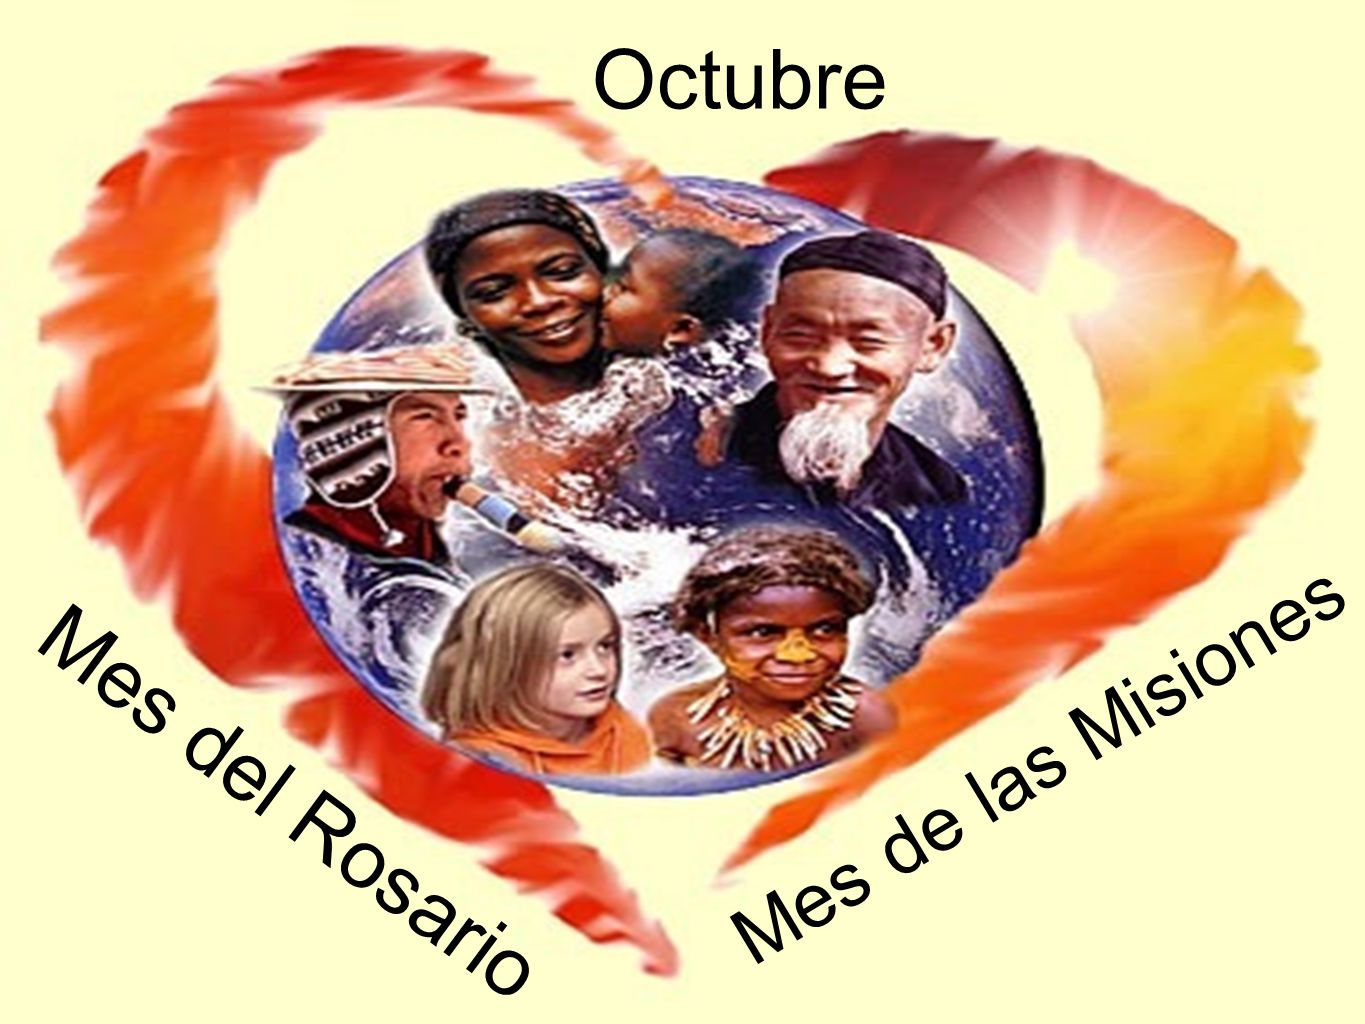 Octubre Mes de las Misiones Mes del Rosario. - ppt video online descargar